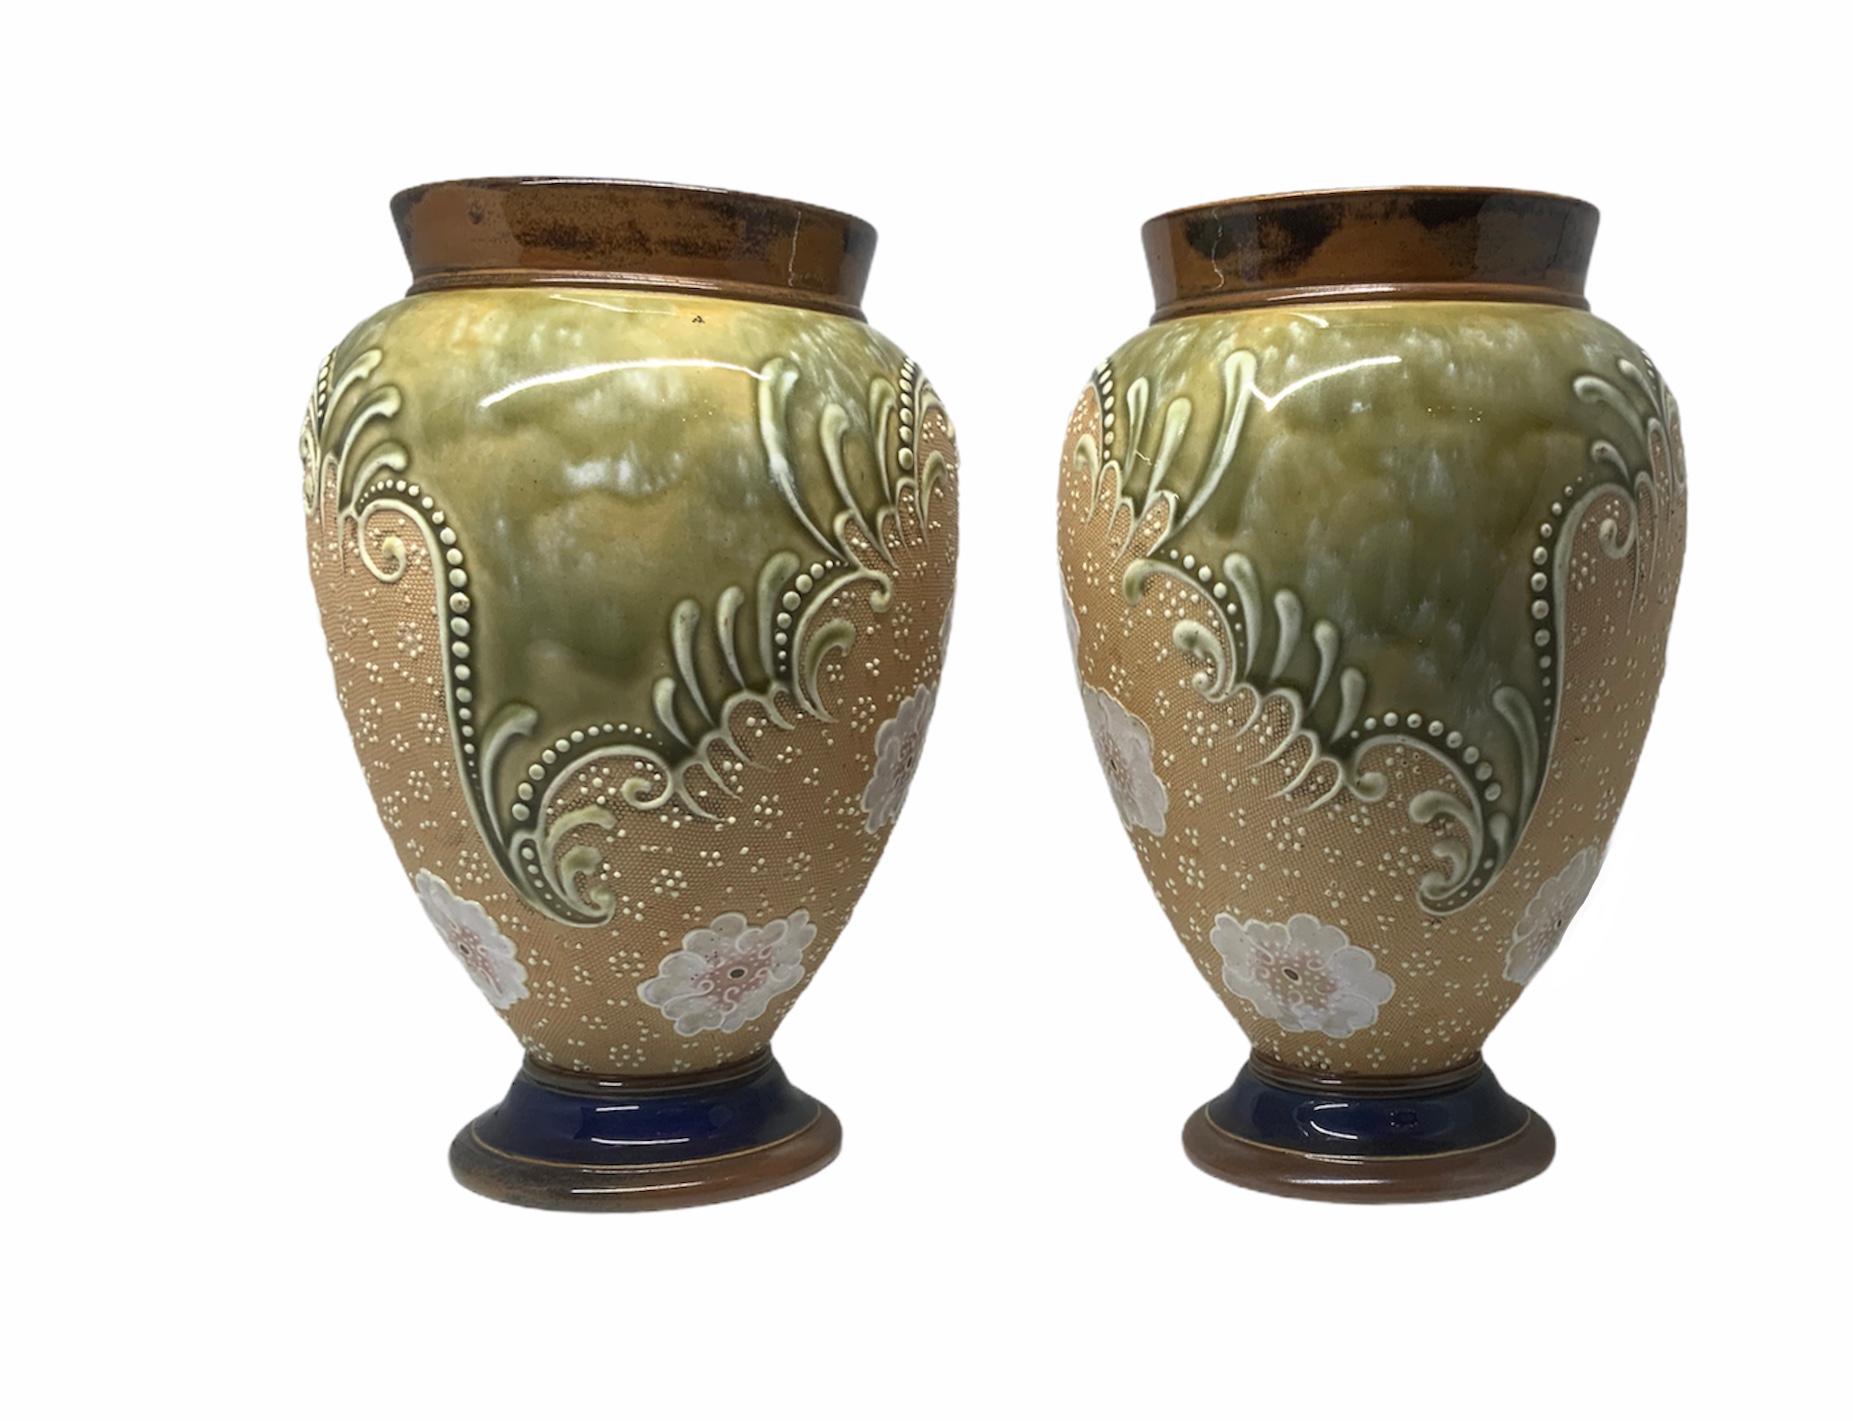 Es handelt sich um ein Paar handbemalte Vasen in Form einer Amphora aus Steingut von Doulton und Slater. Ihr Hintergrund ist eine Kombination aus braunen, grünen und beigen Farben. Sie sind mit einer Gruppe weißer Blumen geschmückt, die rundherum